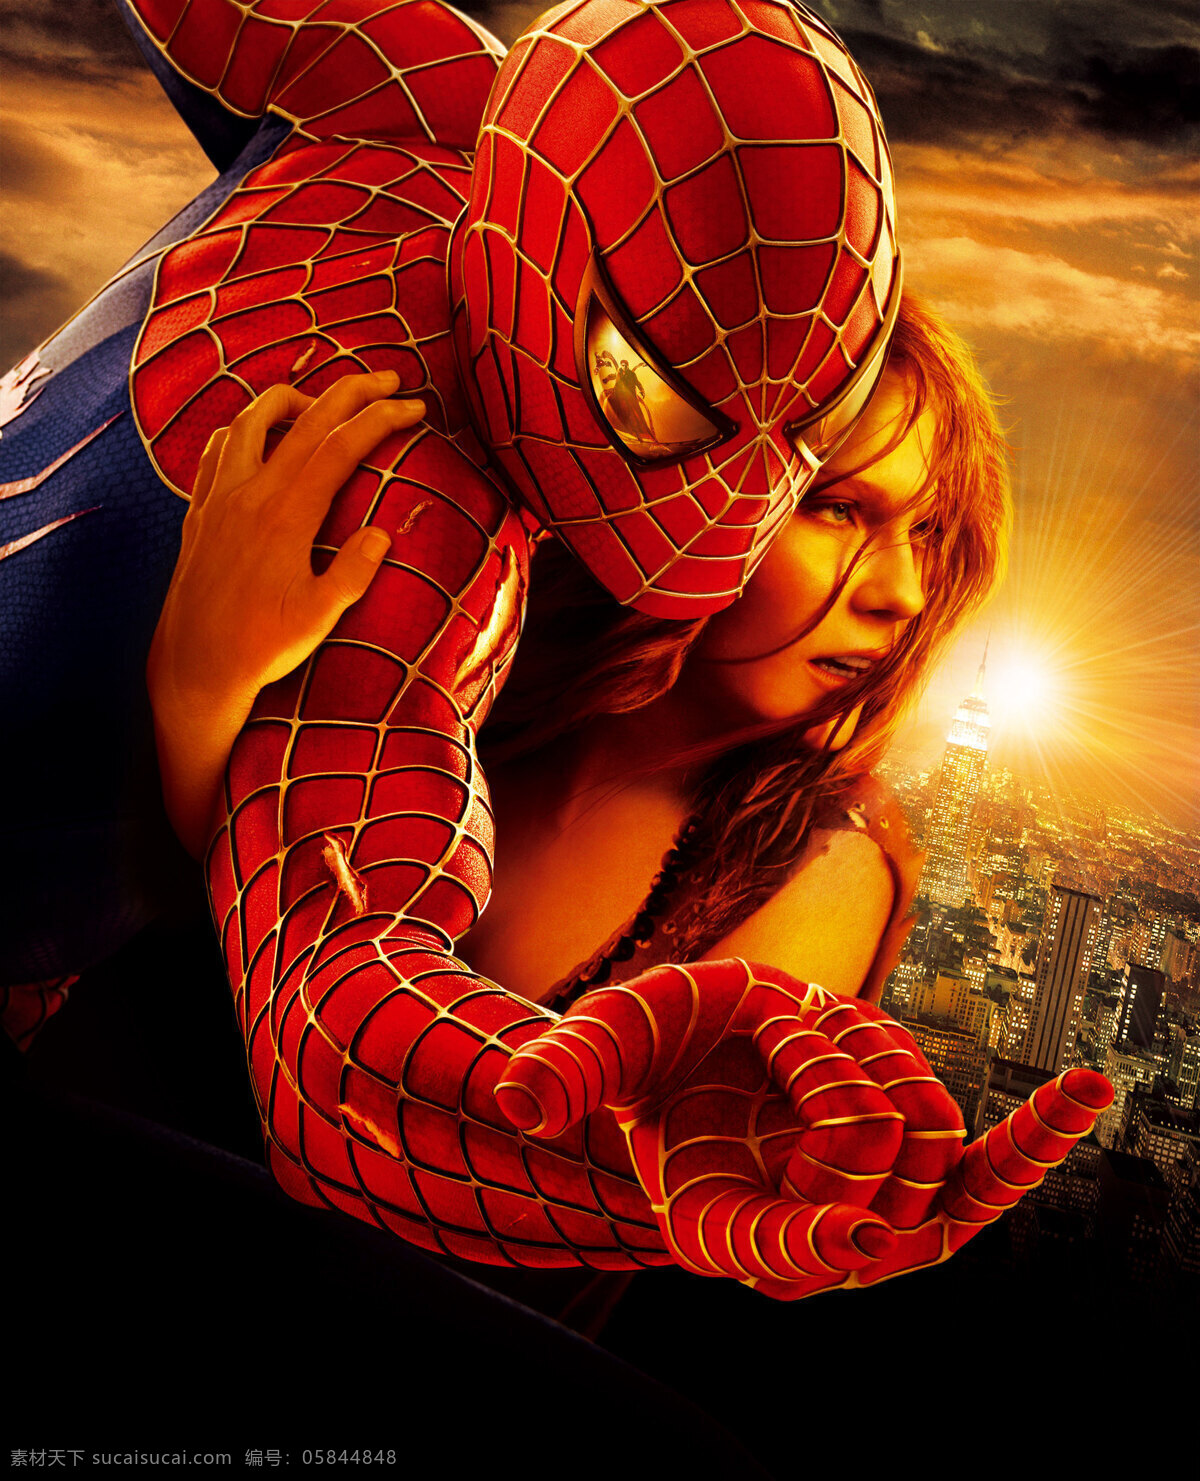 海报模板下载 海报设计素材 文化艺术 蜘蛛侠 ii 海报 影视娱乐 企业文化海报